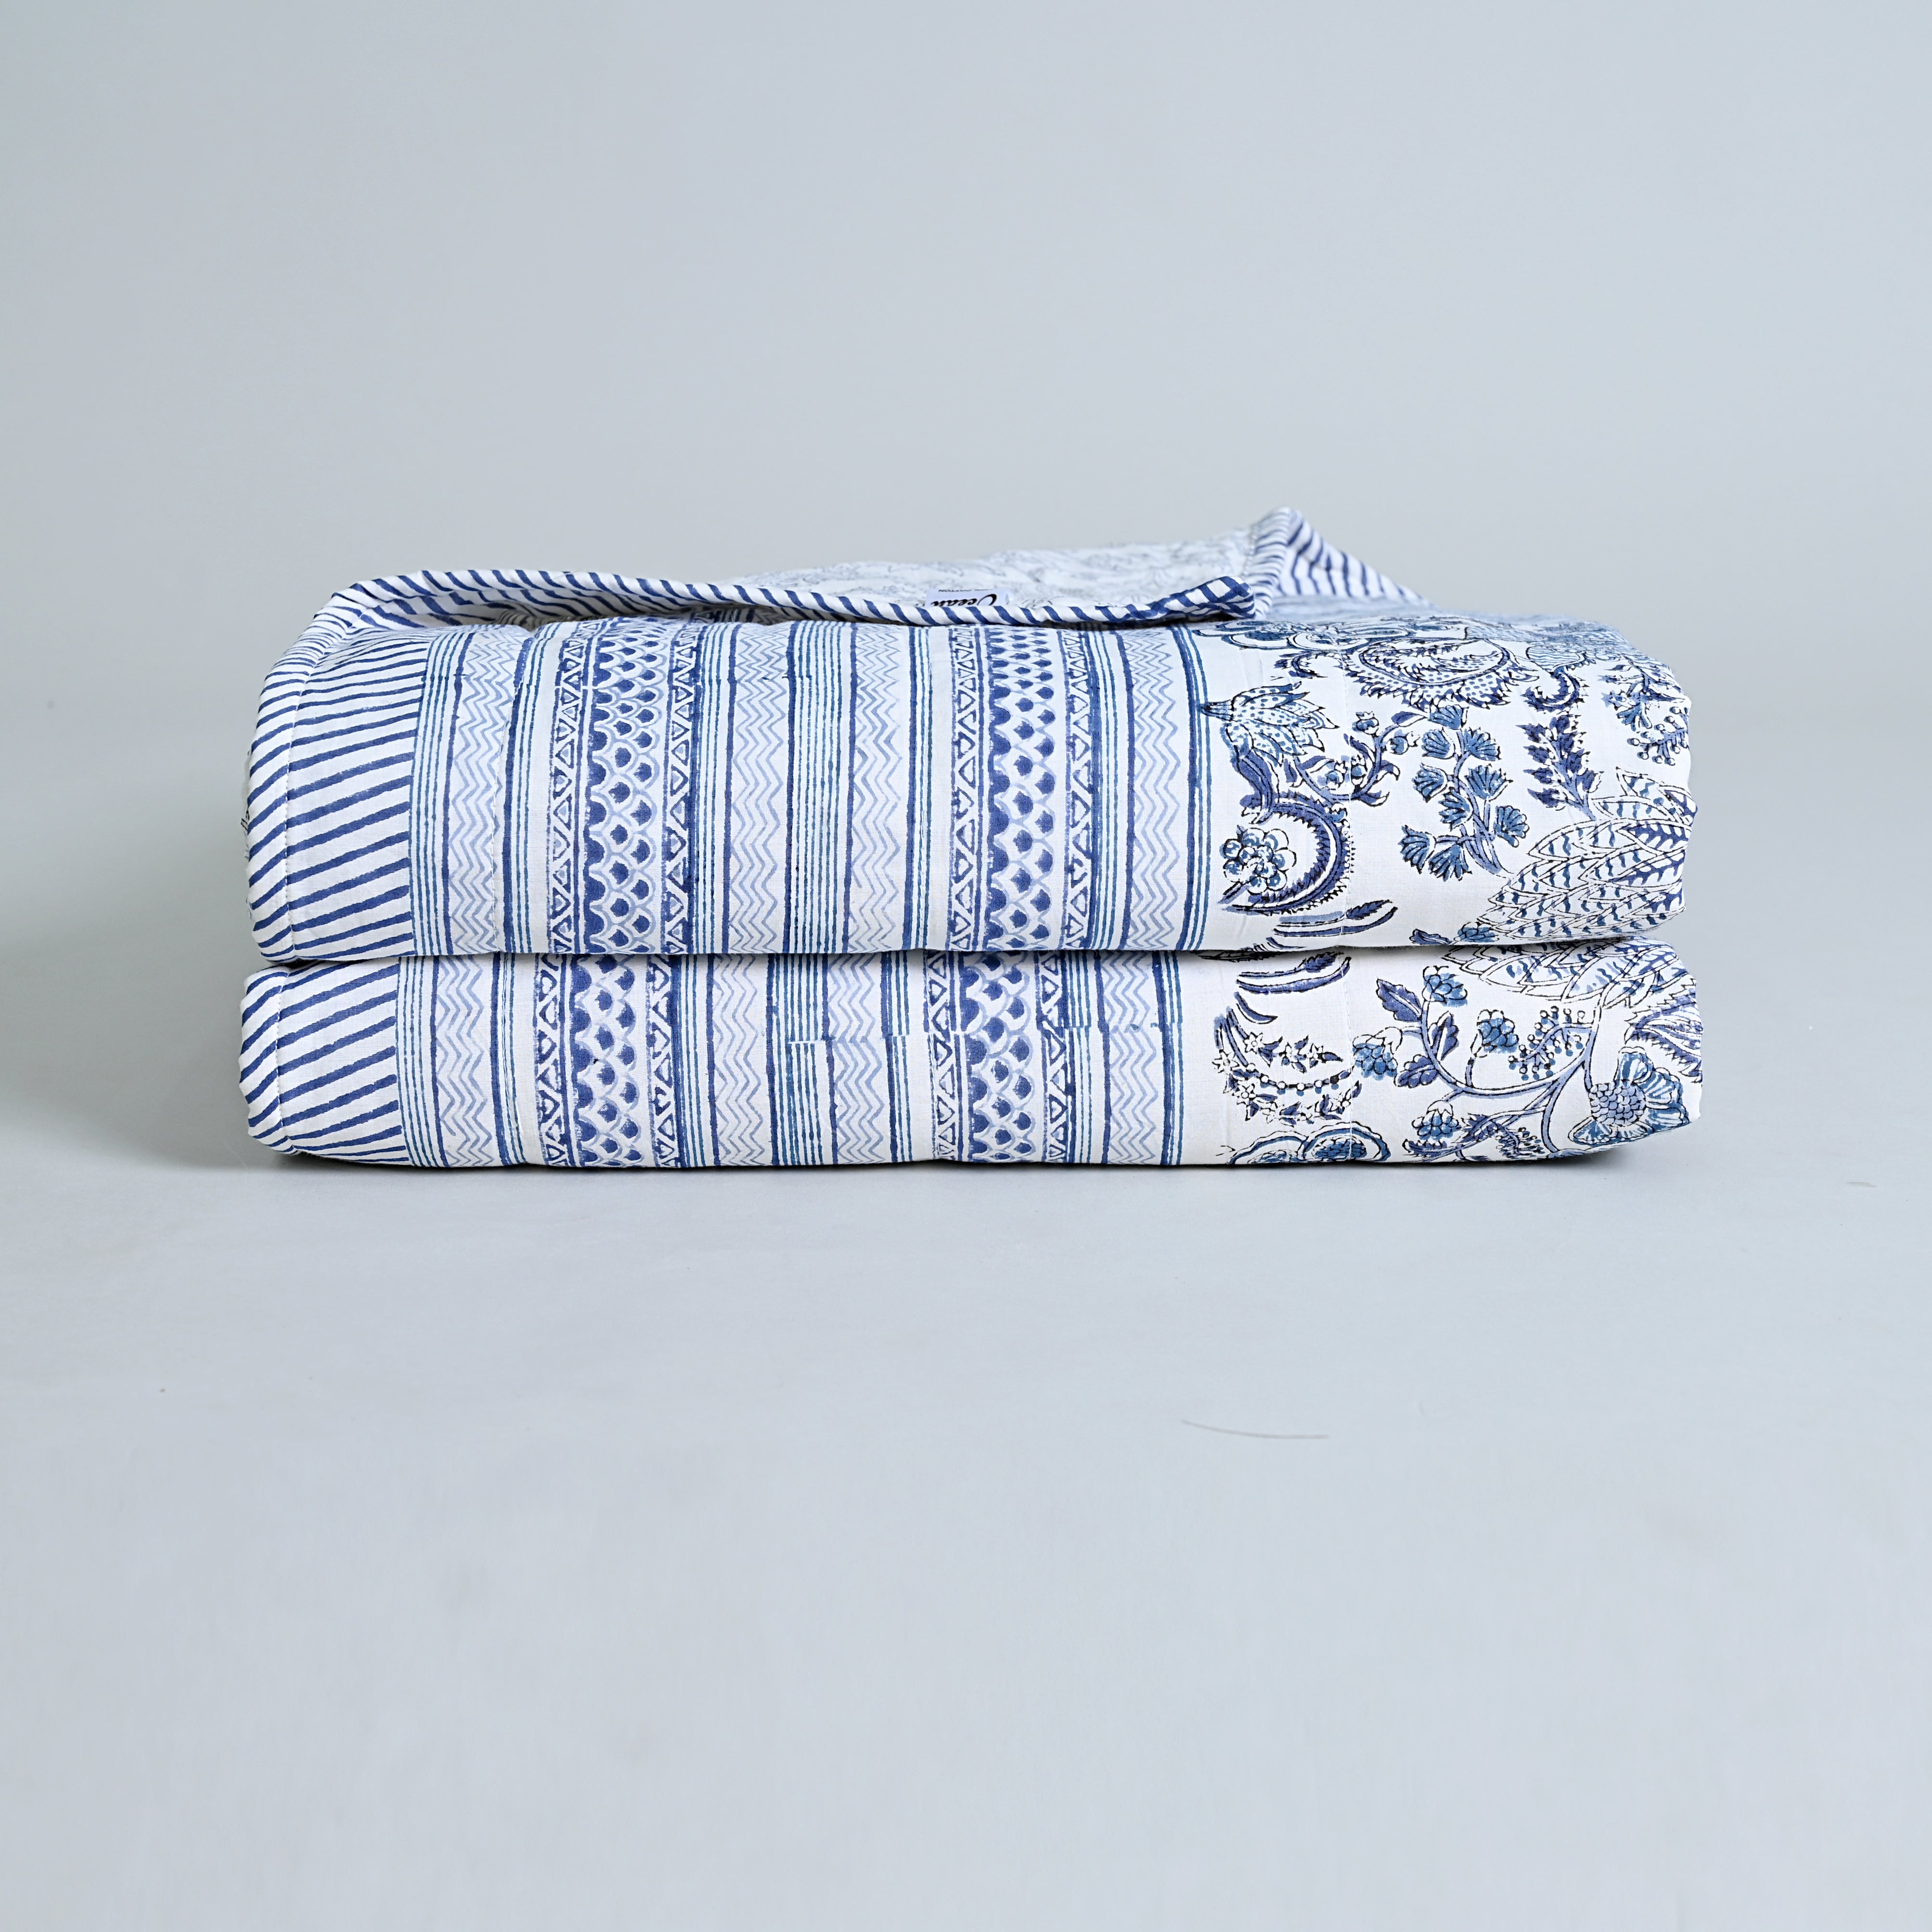 Ketki  Lightwight Flannel Filled, Soft Summer Blanket/ Dohar